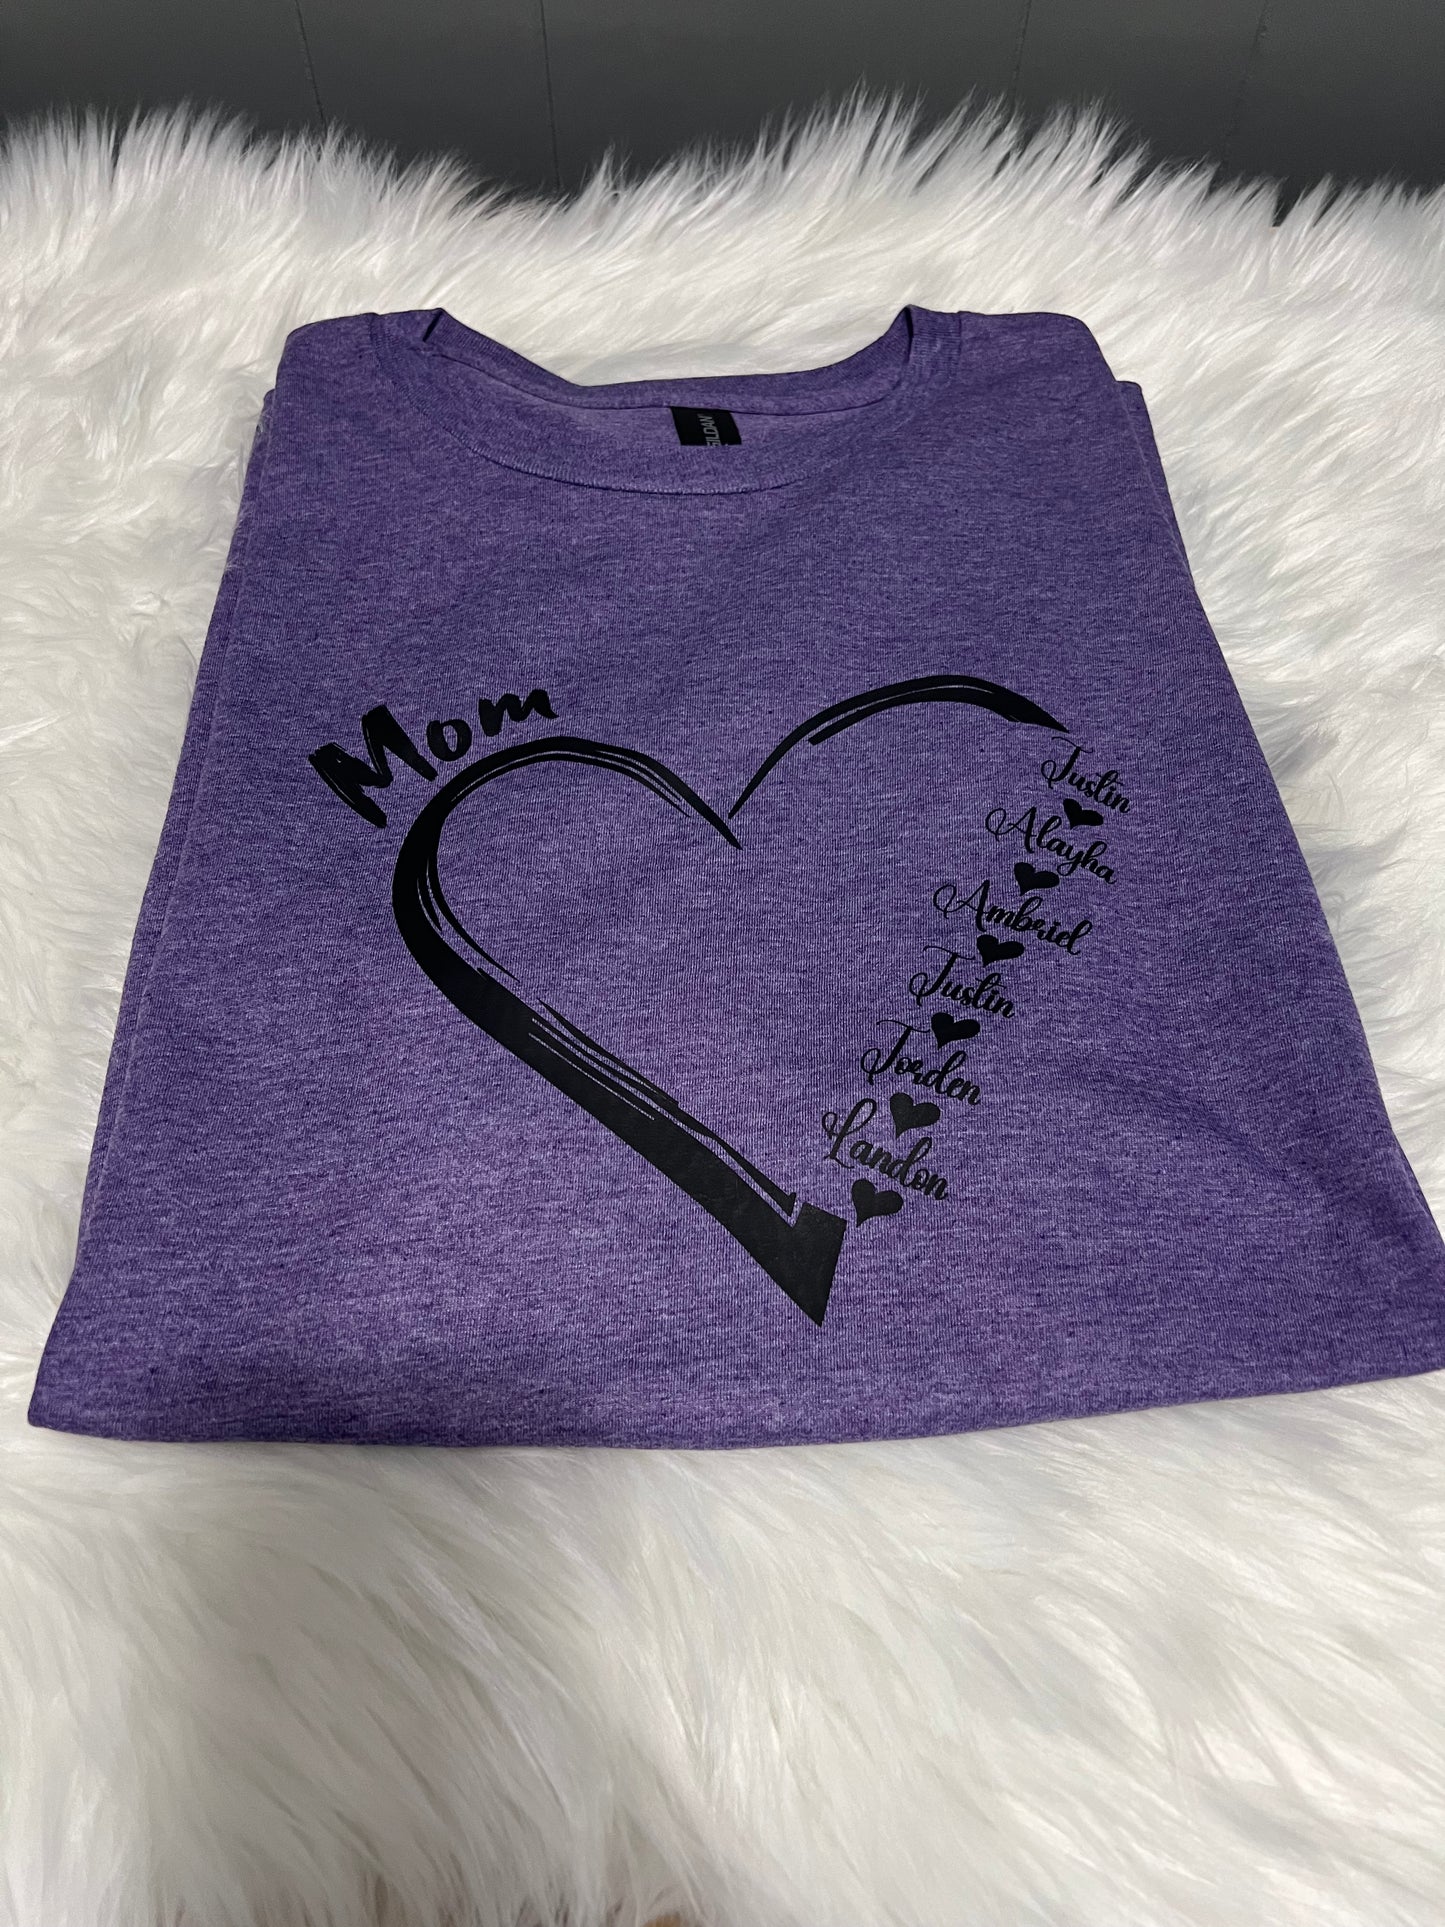 Mama personalized shirts